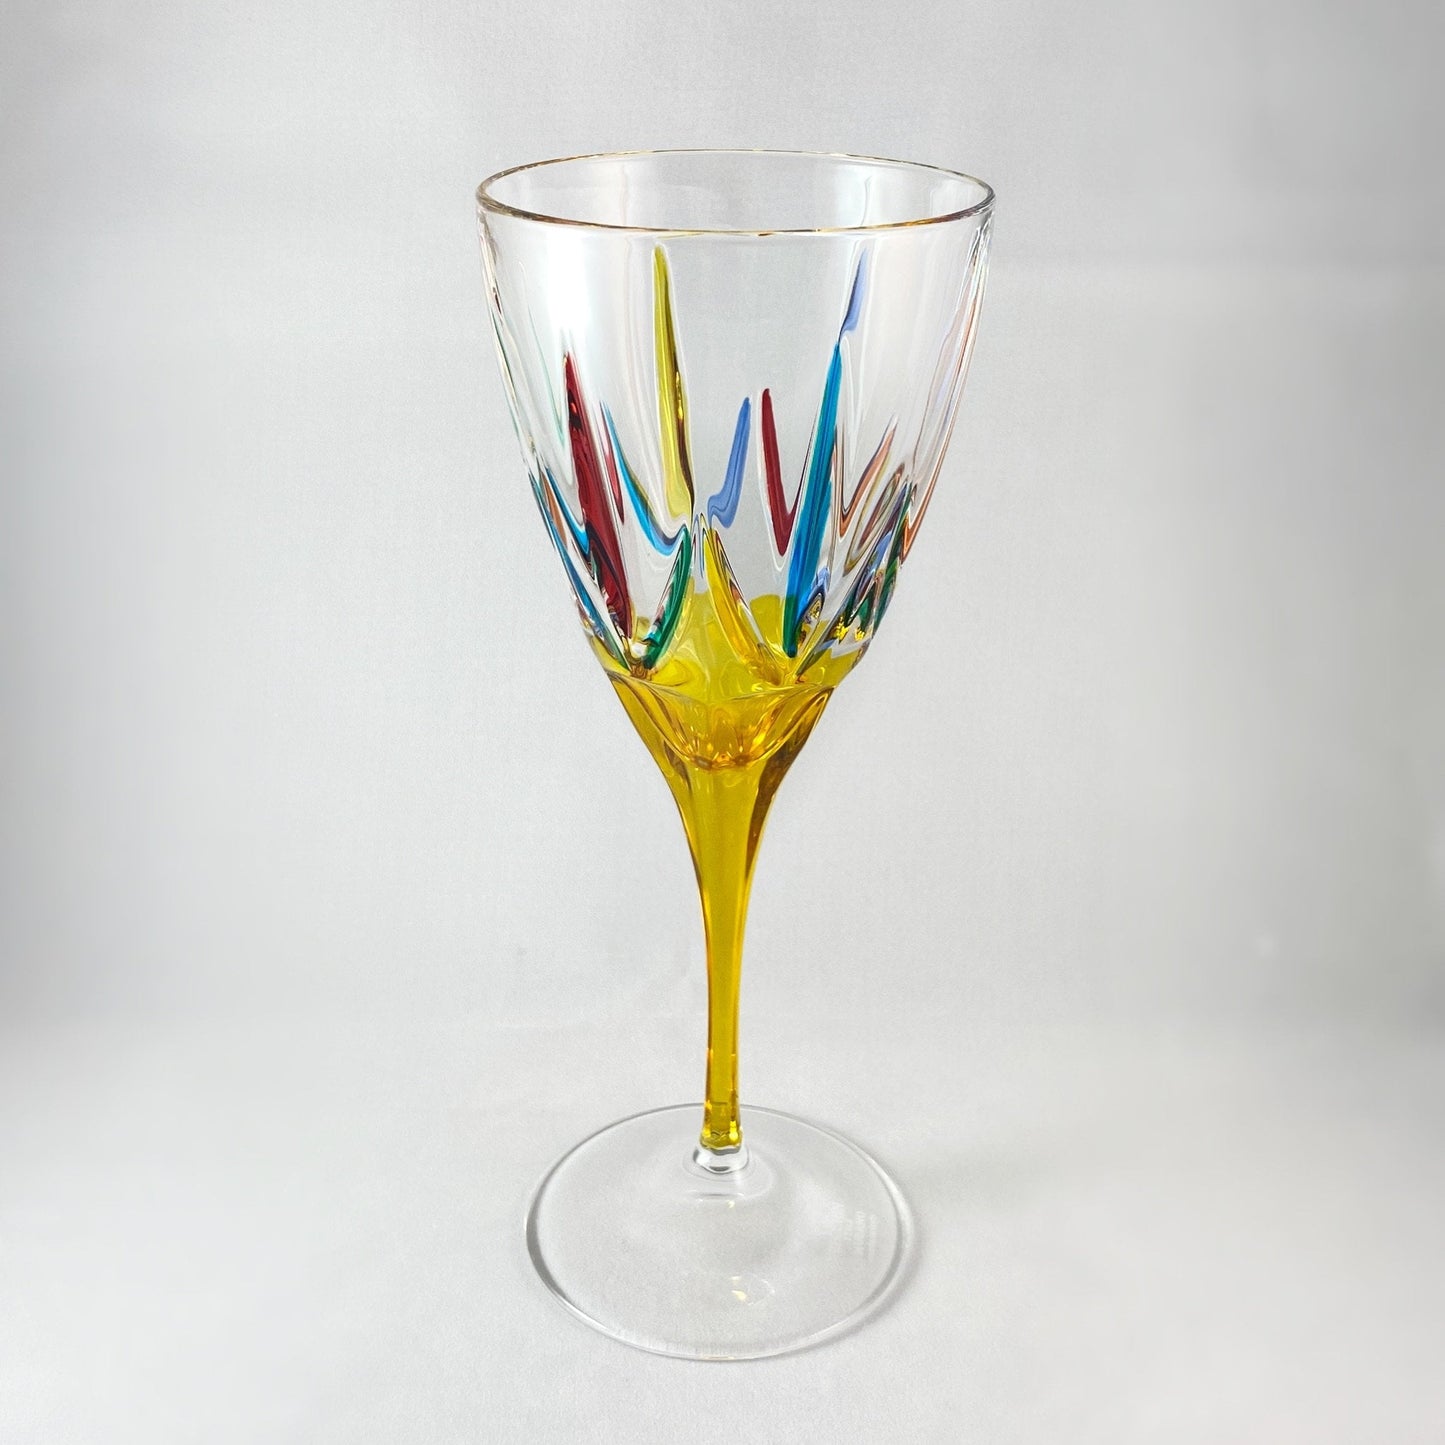 Yellow Stem Chic Venetian Wine Glass - Handmade in Italy, Colorful Murano Glass